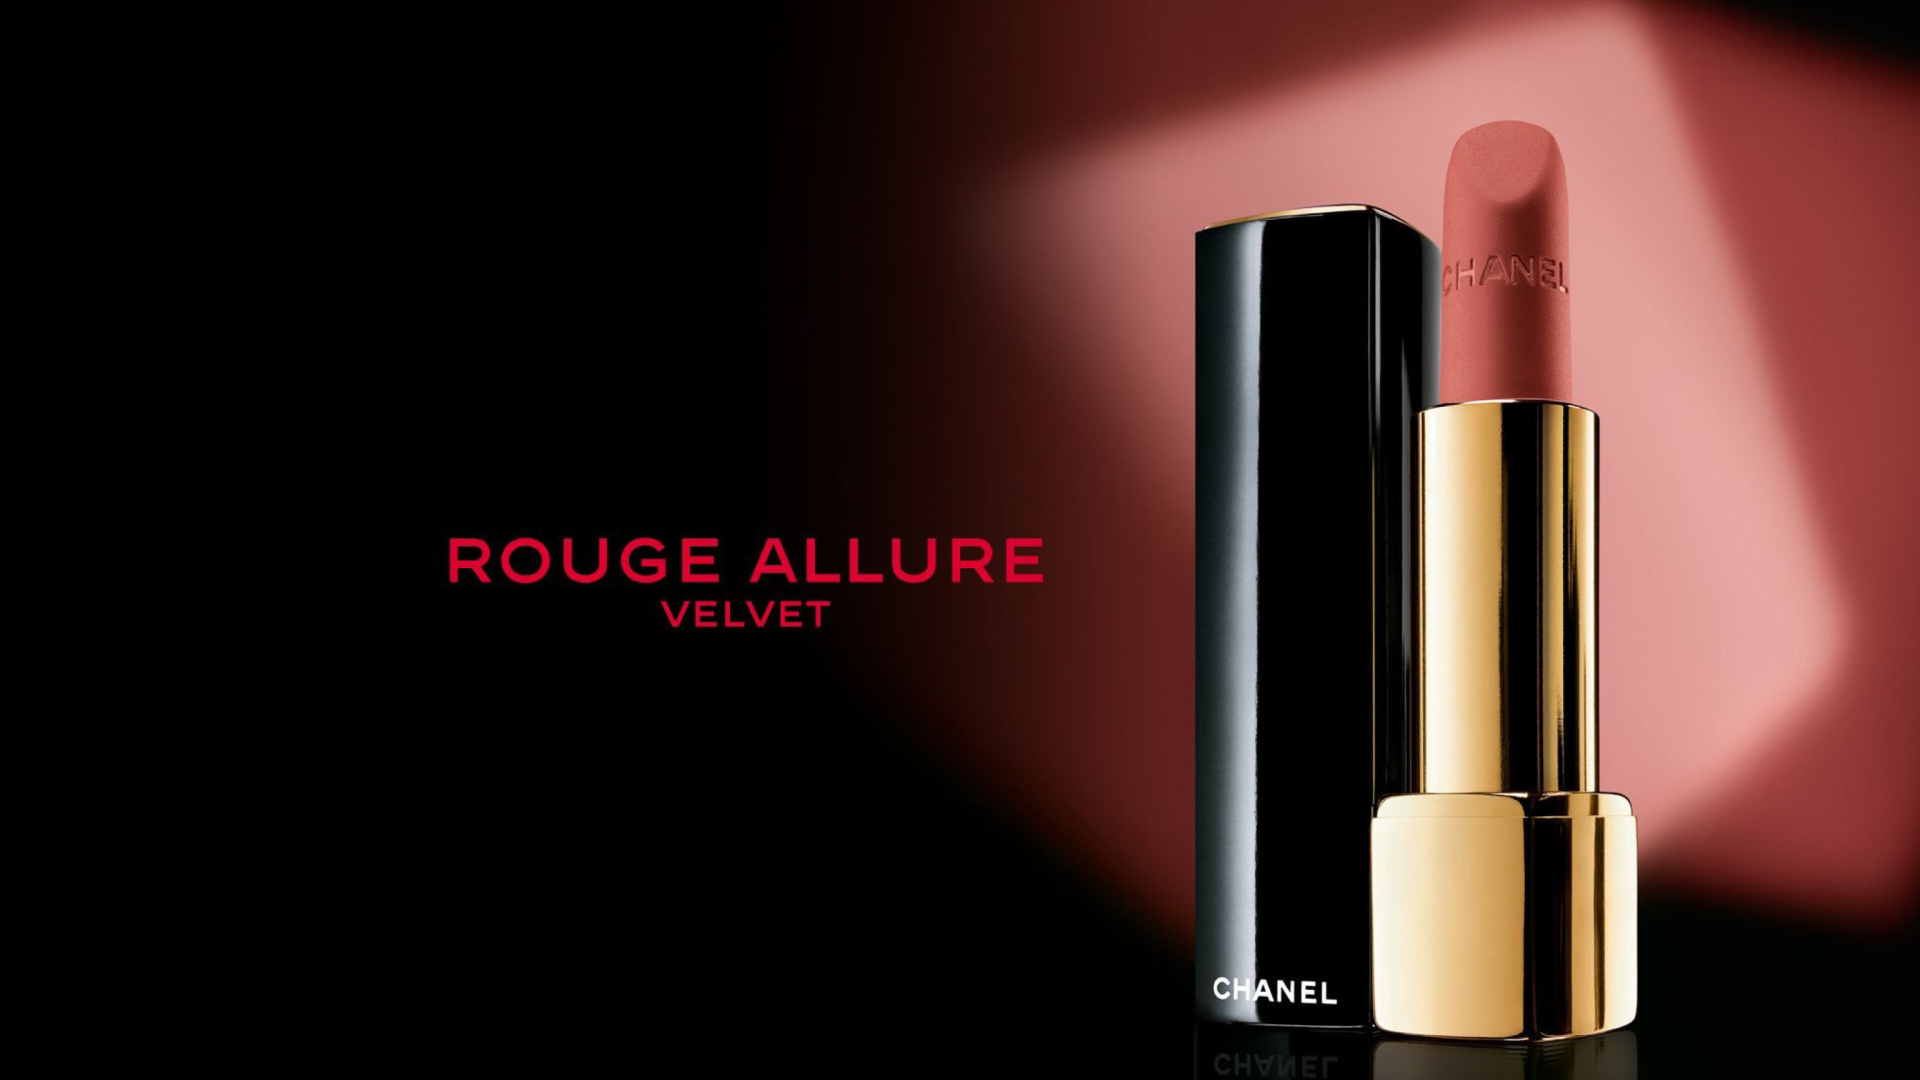 Обои Chanel Rouge Allure Velvet 1920x1080